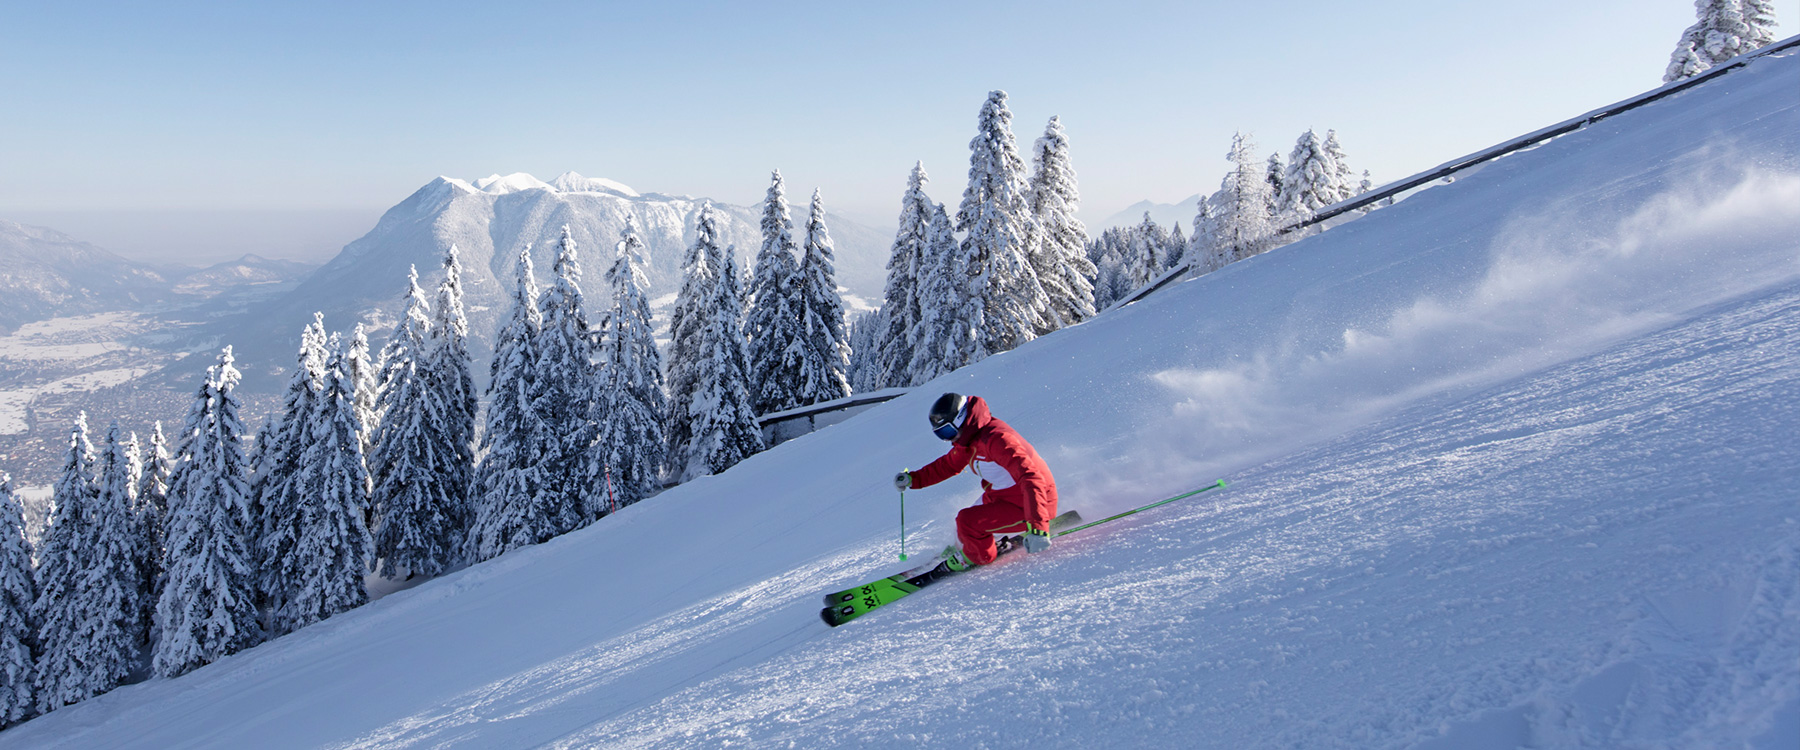 Ski Lessons in Garmisch-Partenkirchen